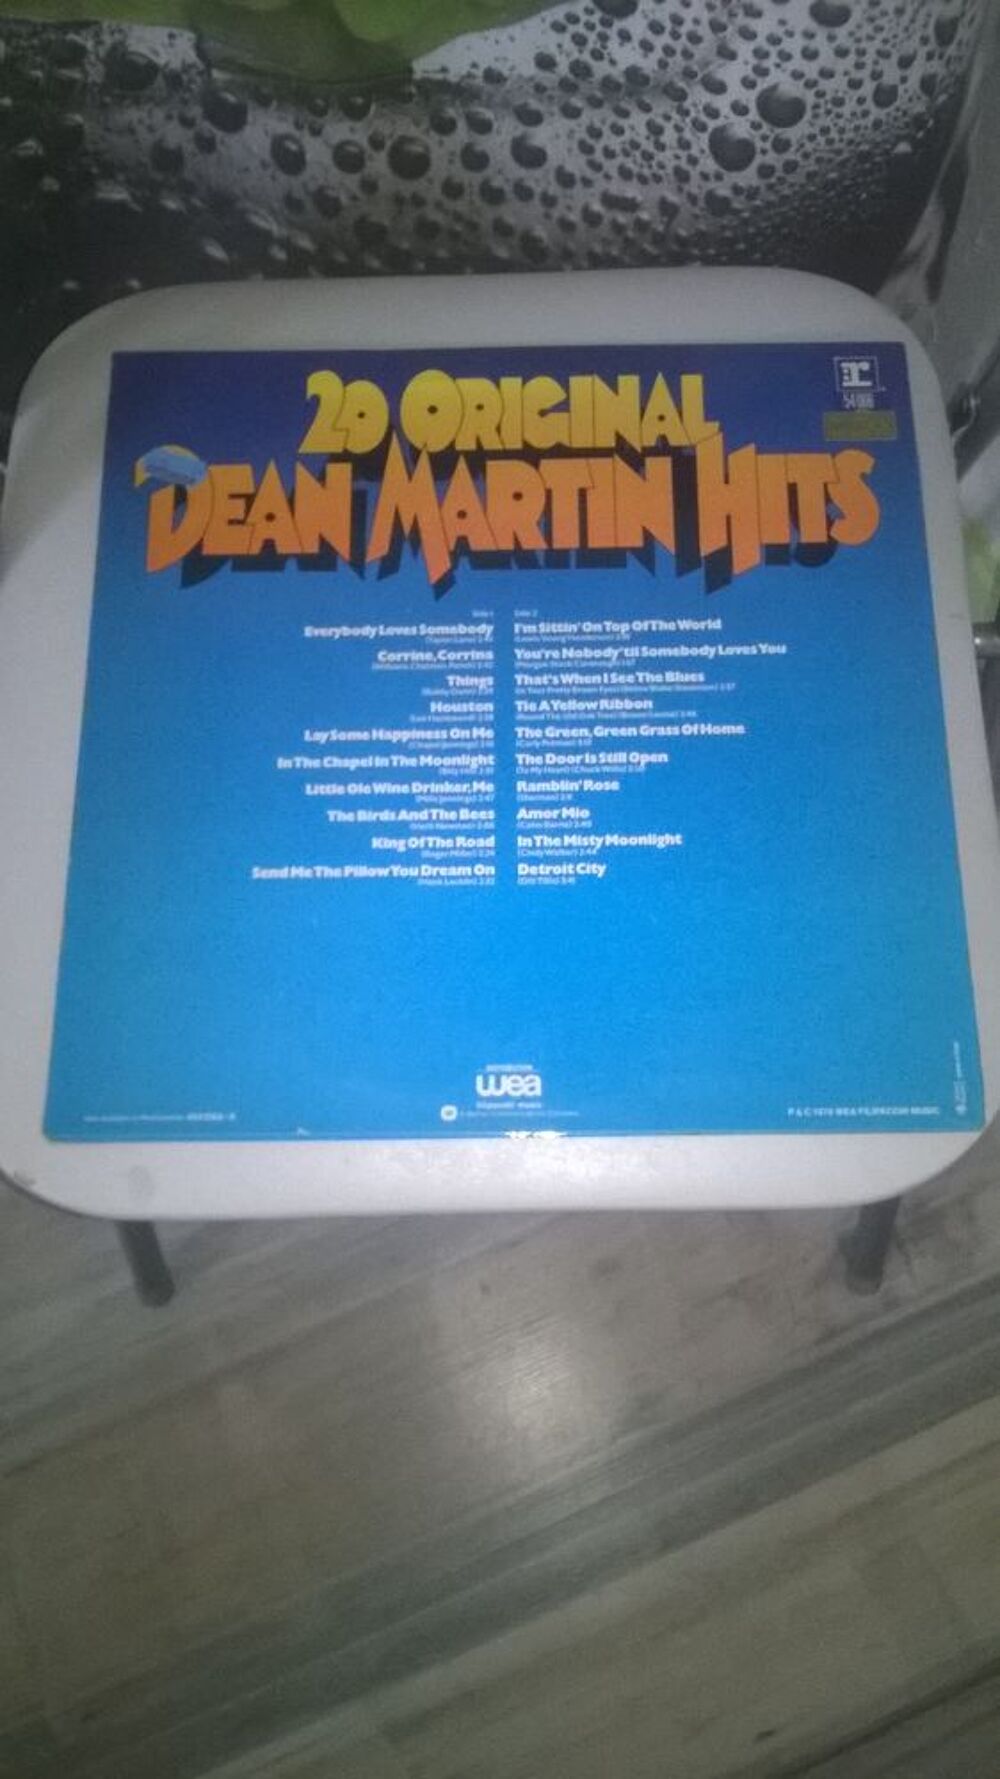 Vinyle Dean Martin
20 Original Hits
1976
Excellent etat
CD et vinyles